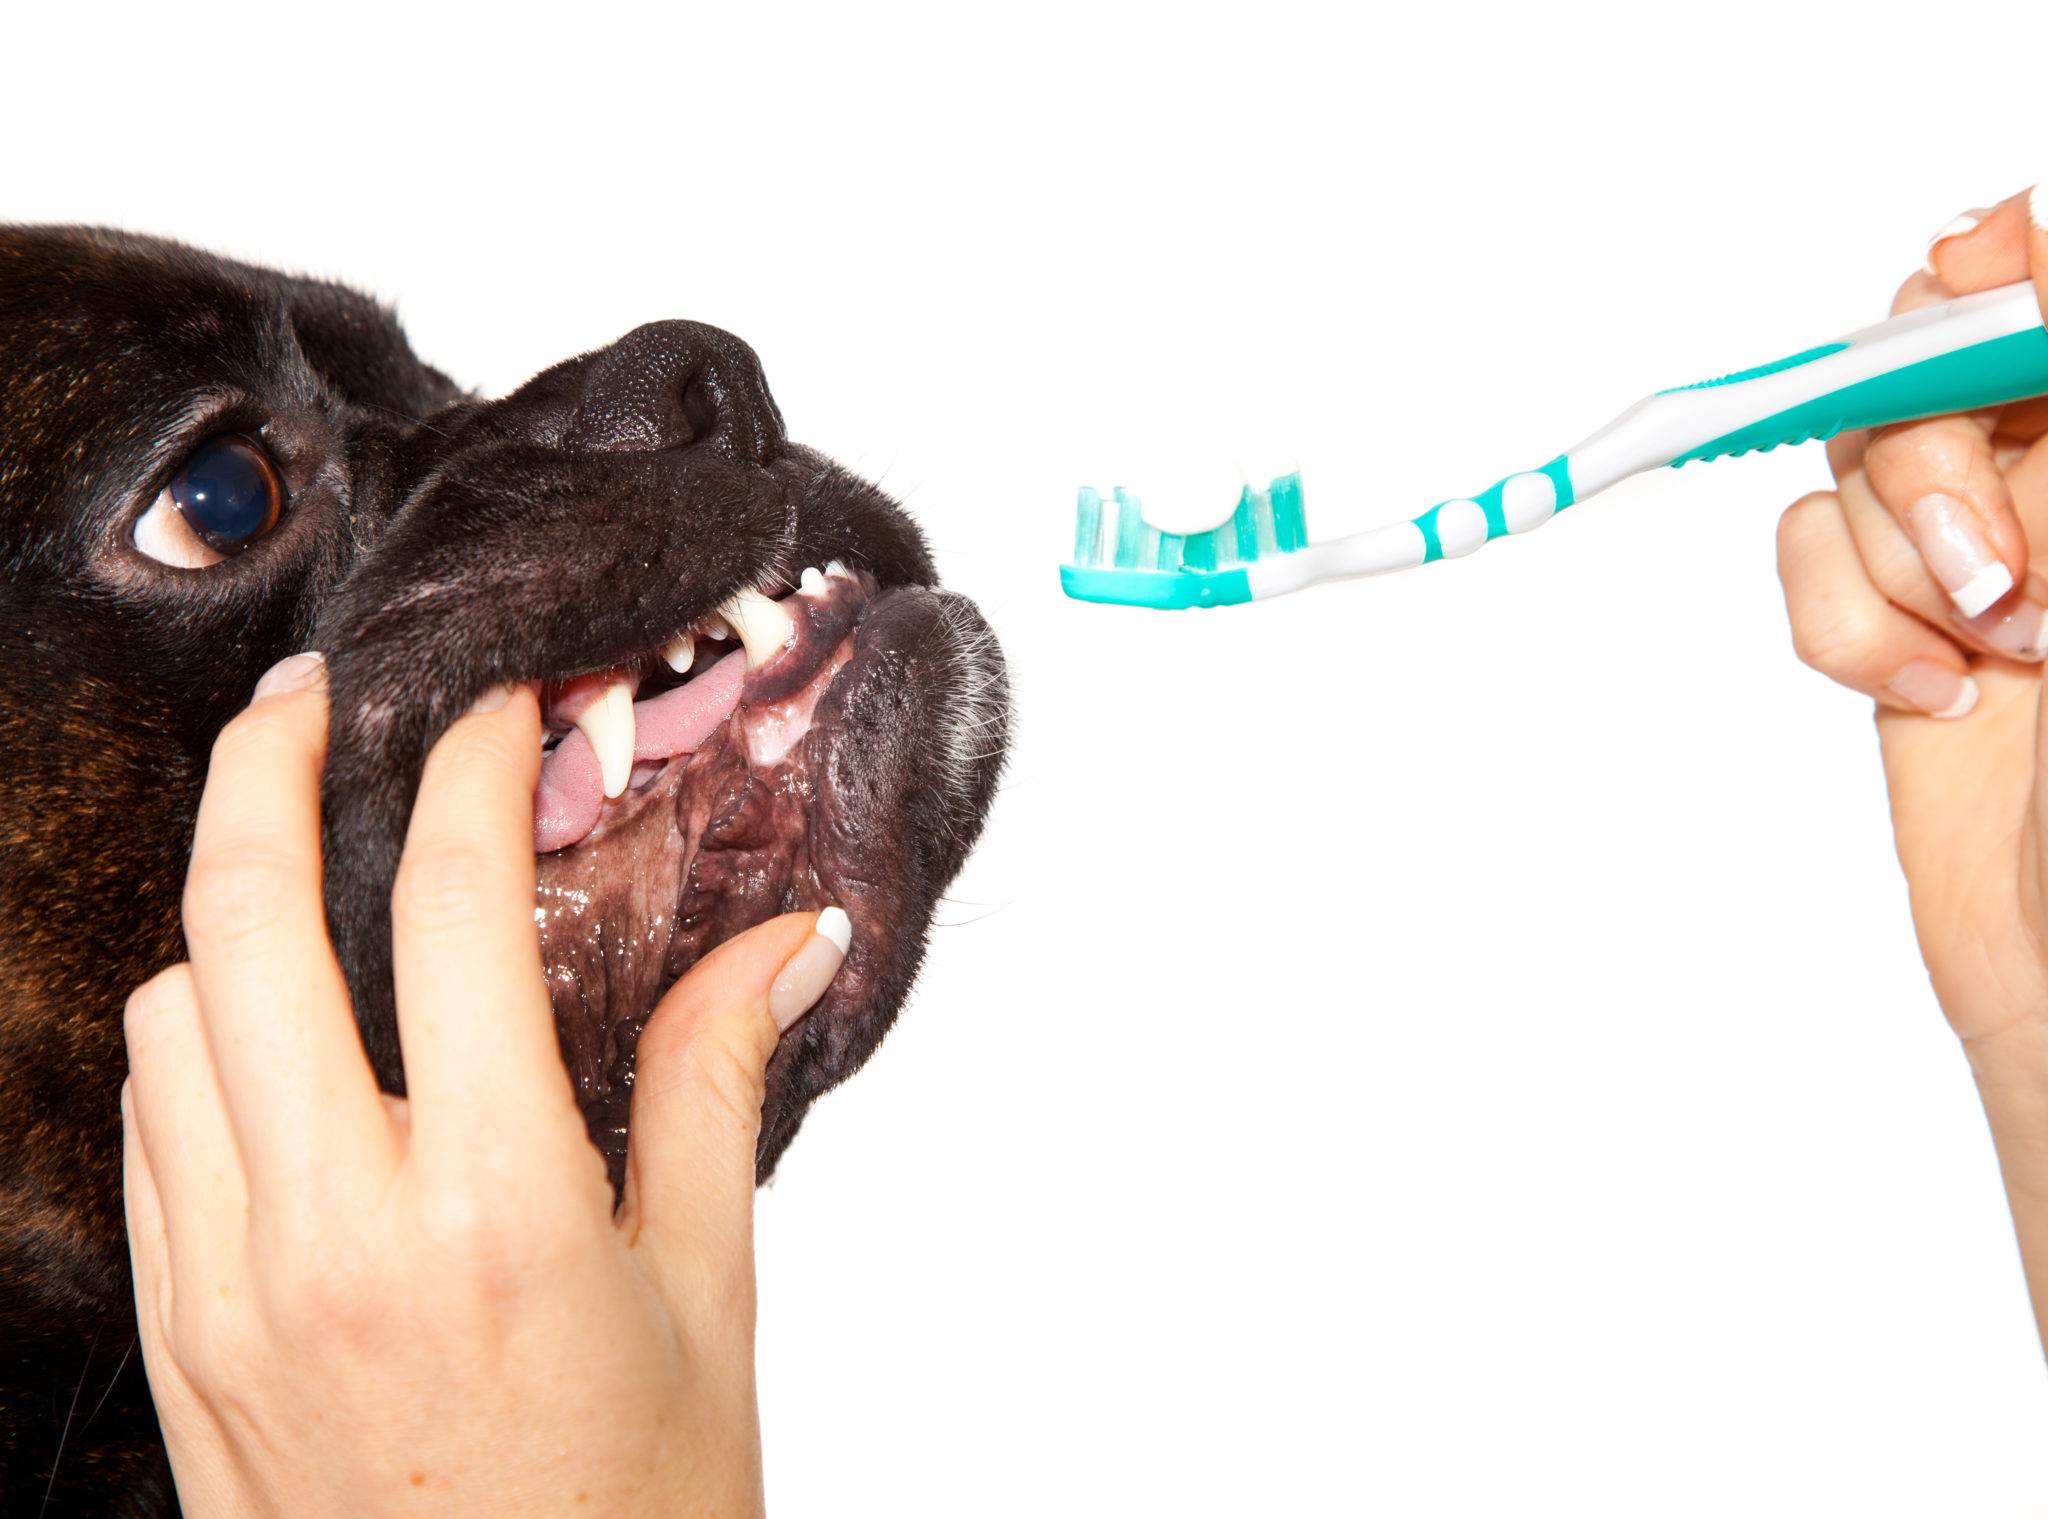 Нужно ли чистить зубы собаке